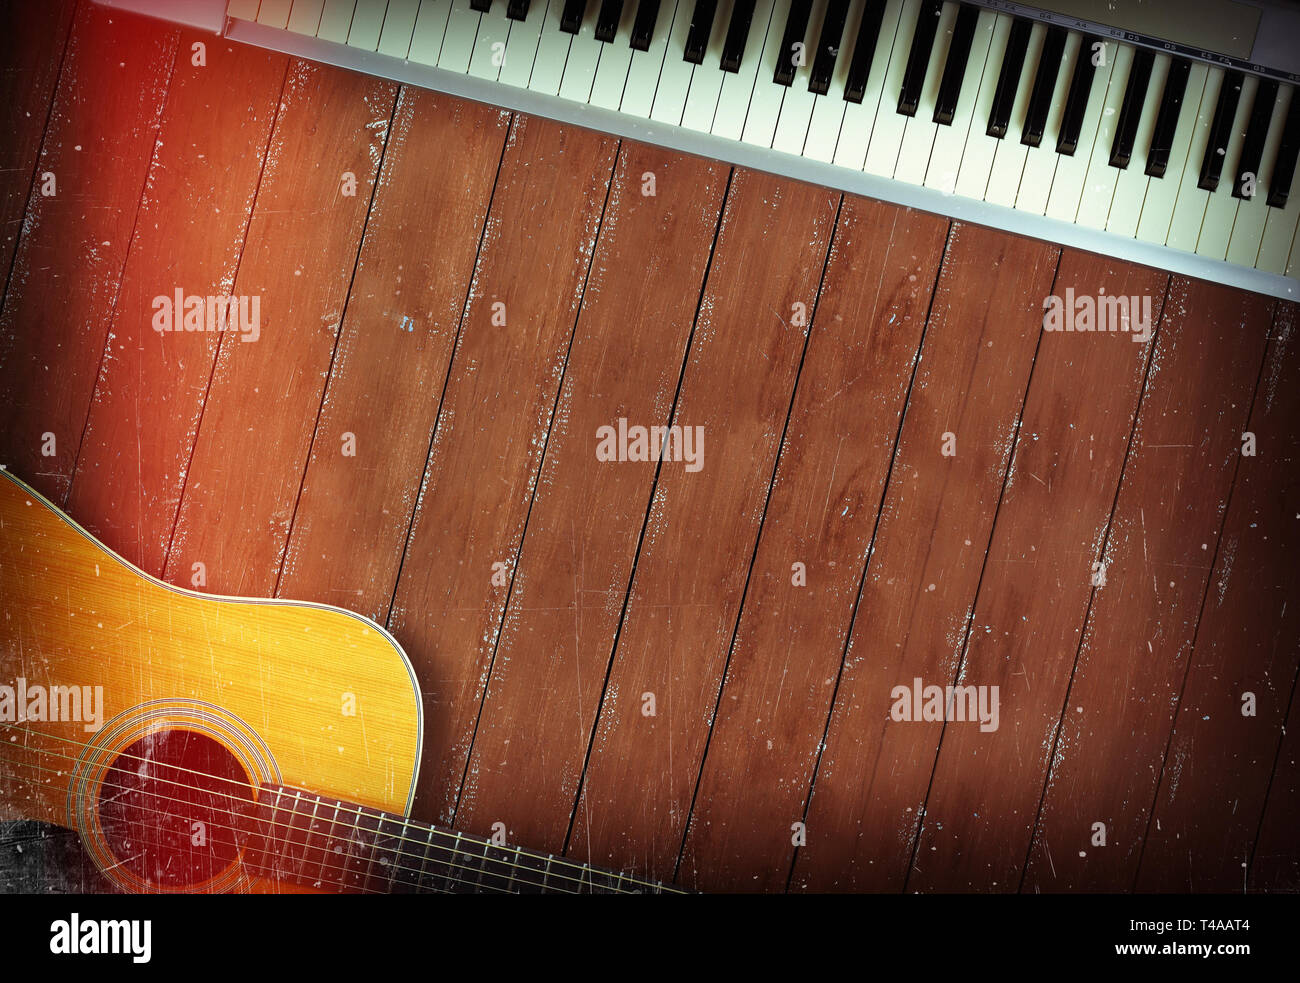 Musikinstrument - Sloseup MIDI Piano 61 Tasten Keyboard und Akustikgitarre auf einem hölzernen Hintergrund Stockfoto